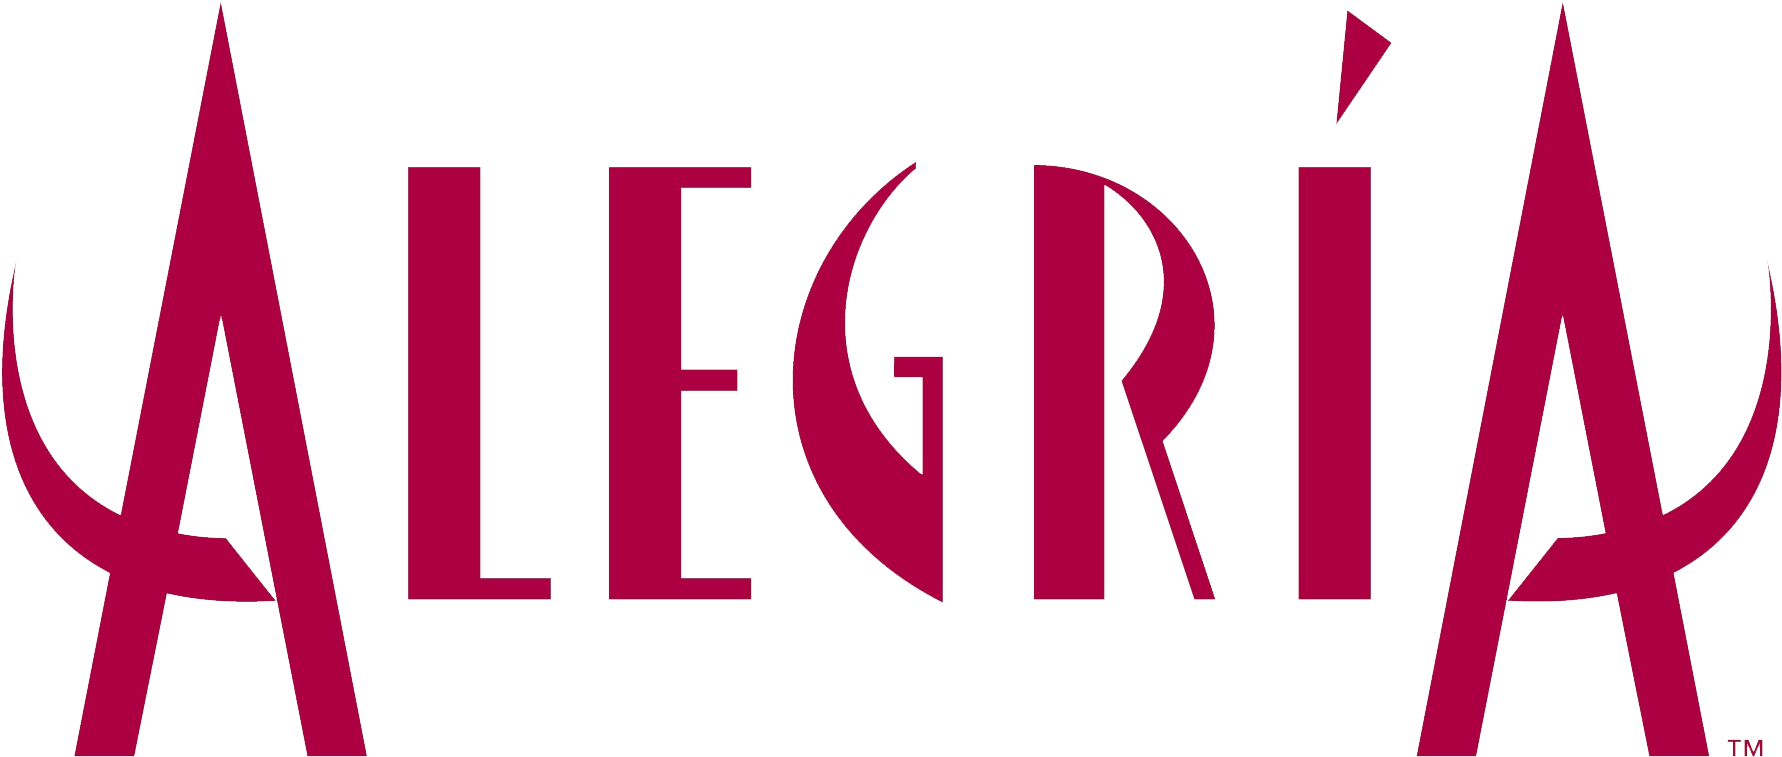 Alegria Logo - Cirque Du Soleil Alegria Png (1968x836), Png Download